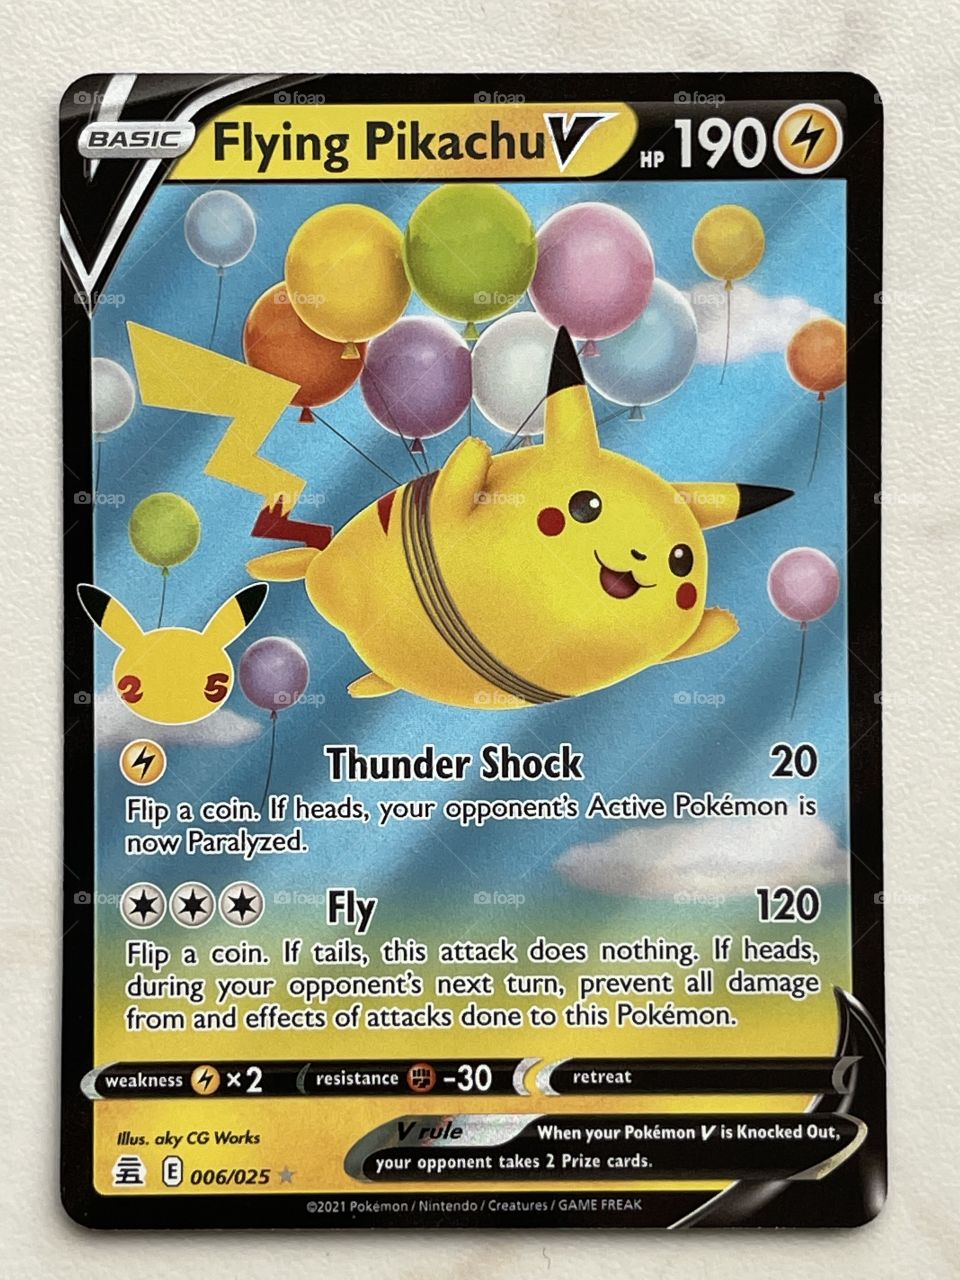 Pokémon Trading Card Game Dark Sylveon Pikachu